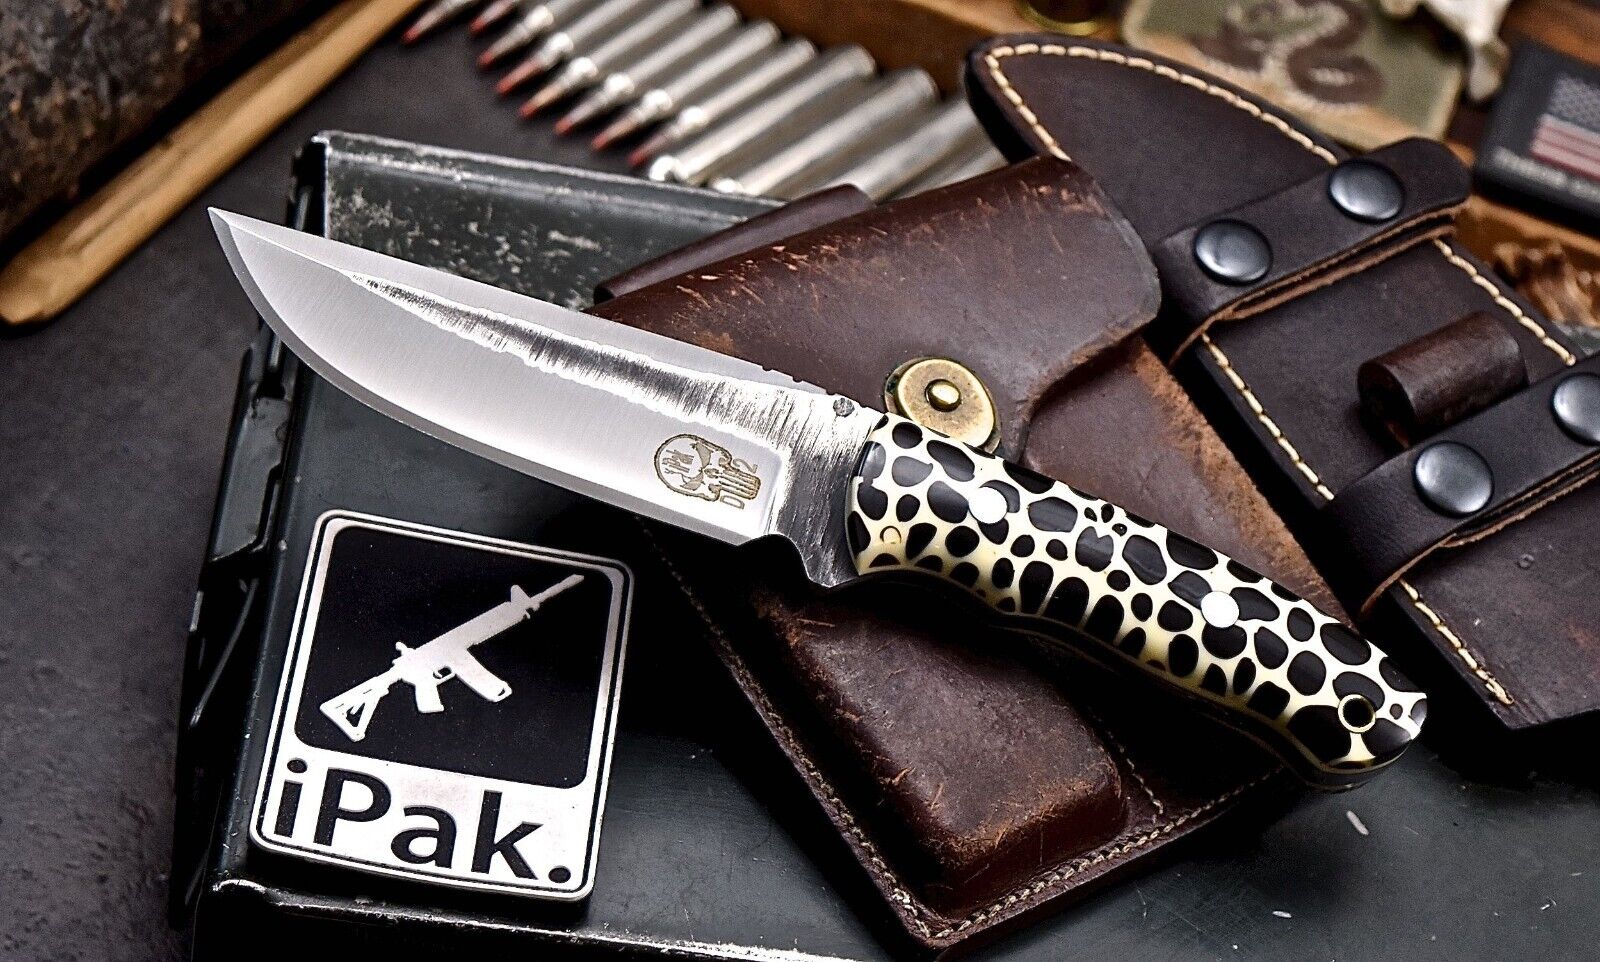 CFK IPAK Handmade D2 Custom CORELON Hunting Skinner Camping Sport Pack Knife